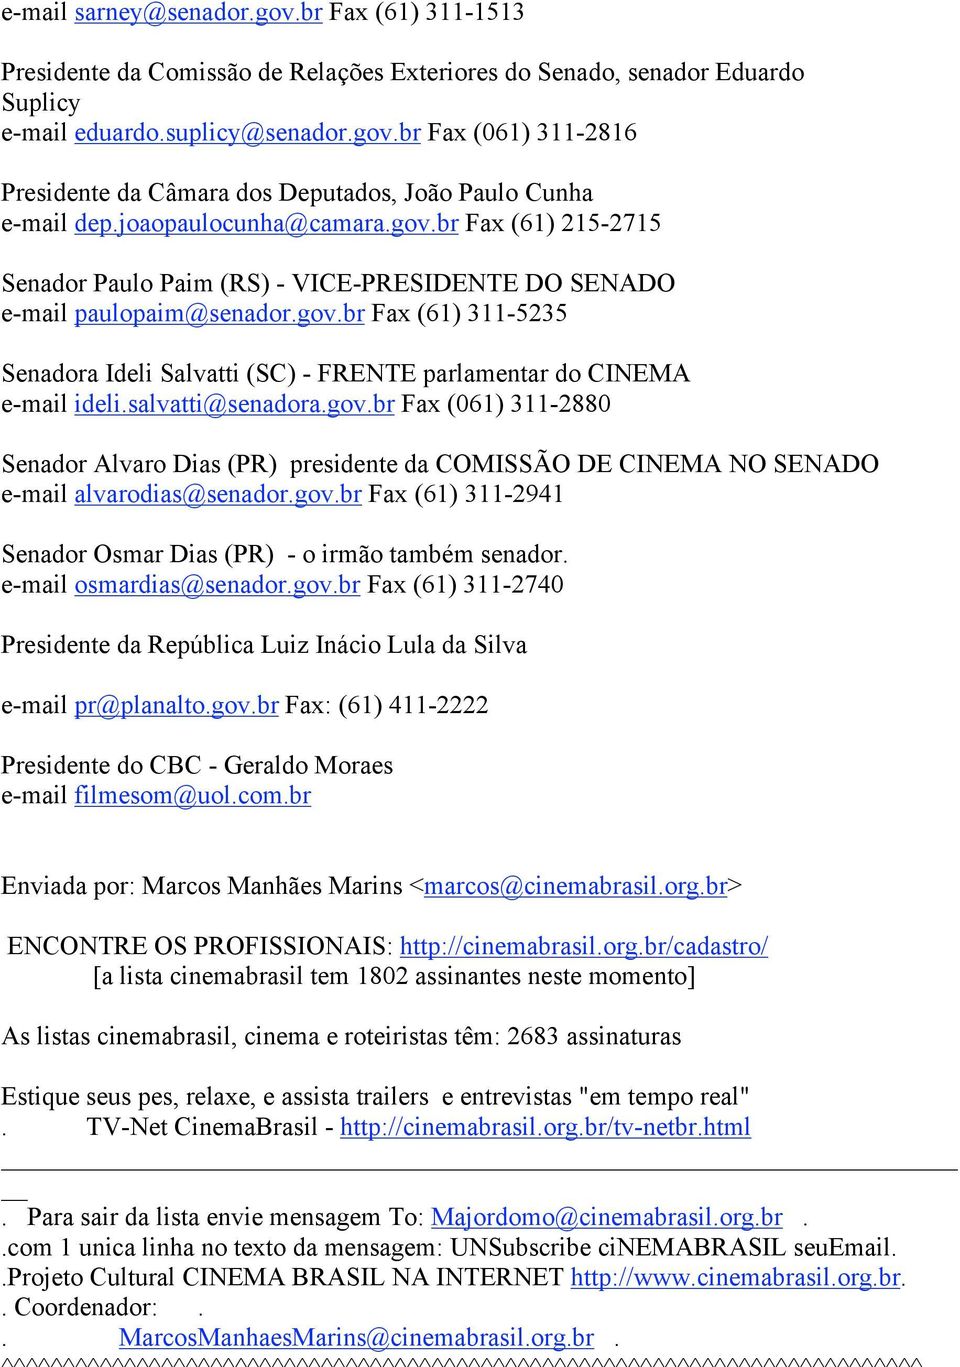 salvatti@senadora.gov.br Fax (061) 311-2880 Senador Alvaro Dias (PR) presidente da COMISSÃO DE CINEMA NO SENADO e-mail alvarodias@senador.gov.br Fax (61) 311-2941 Senador Osmar Dias (PR) - o irmão também senador.